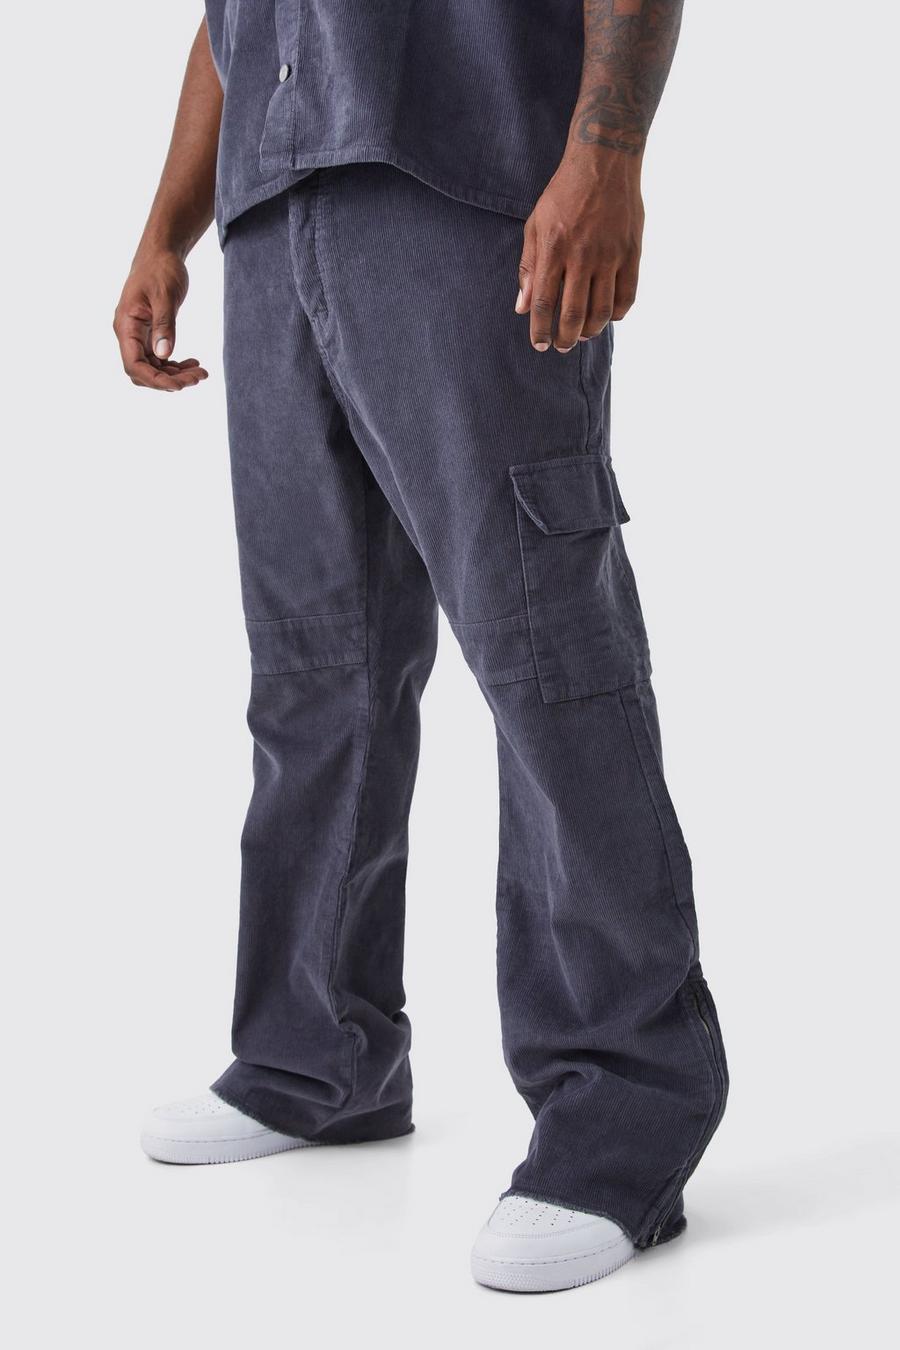 Pantaloni Cargo Plus Size a zampa Slim Fit in velluto a coste con inserti e zip, Charcoal